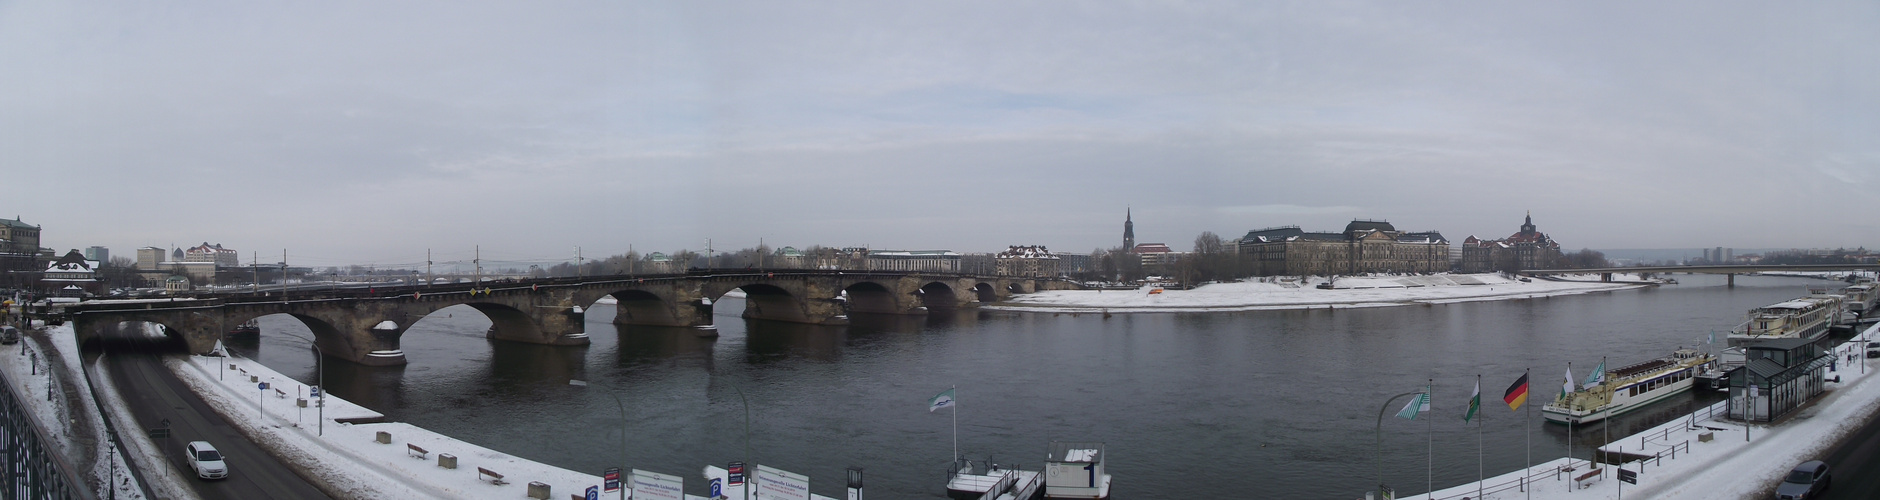 Dresden Elbe 2011